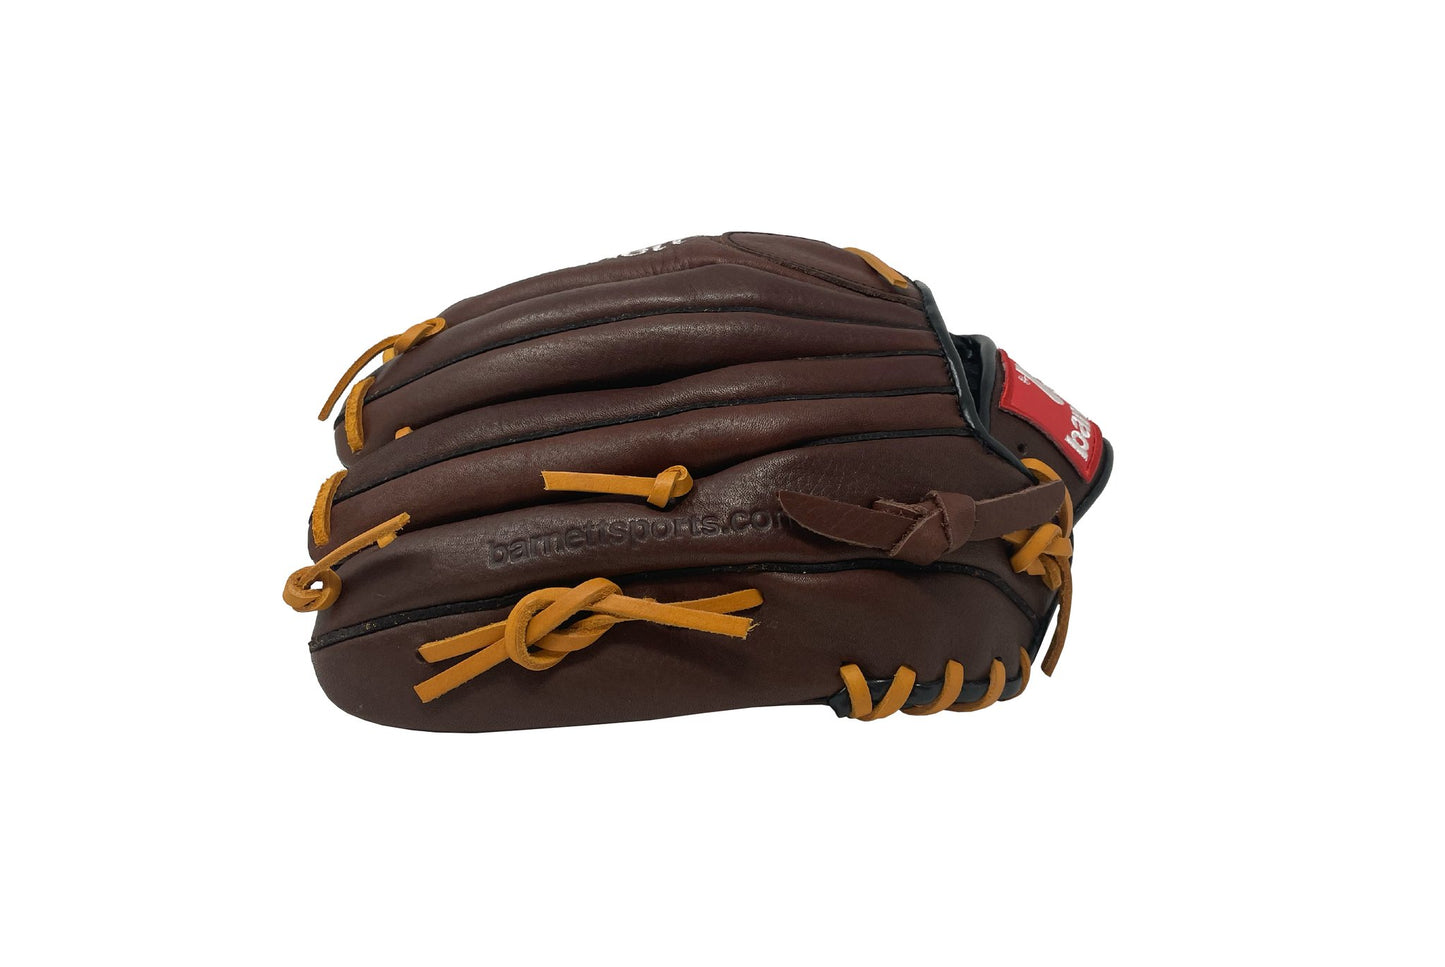 GL-125 Soutěžní kožená baseballová rukavice, outfield 12.5, hnědá